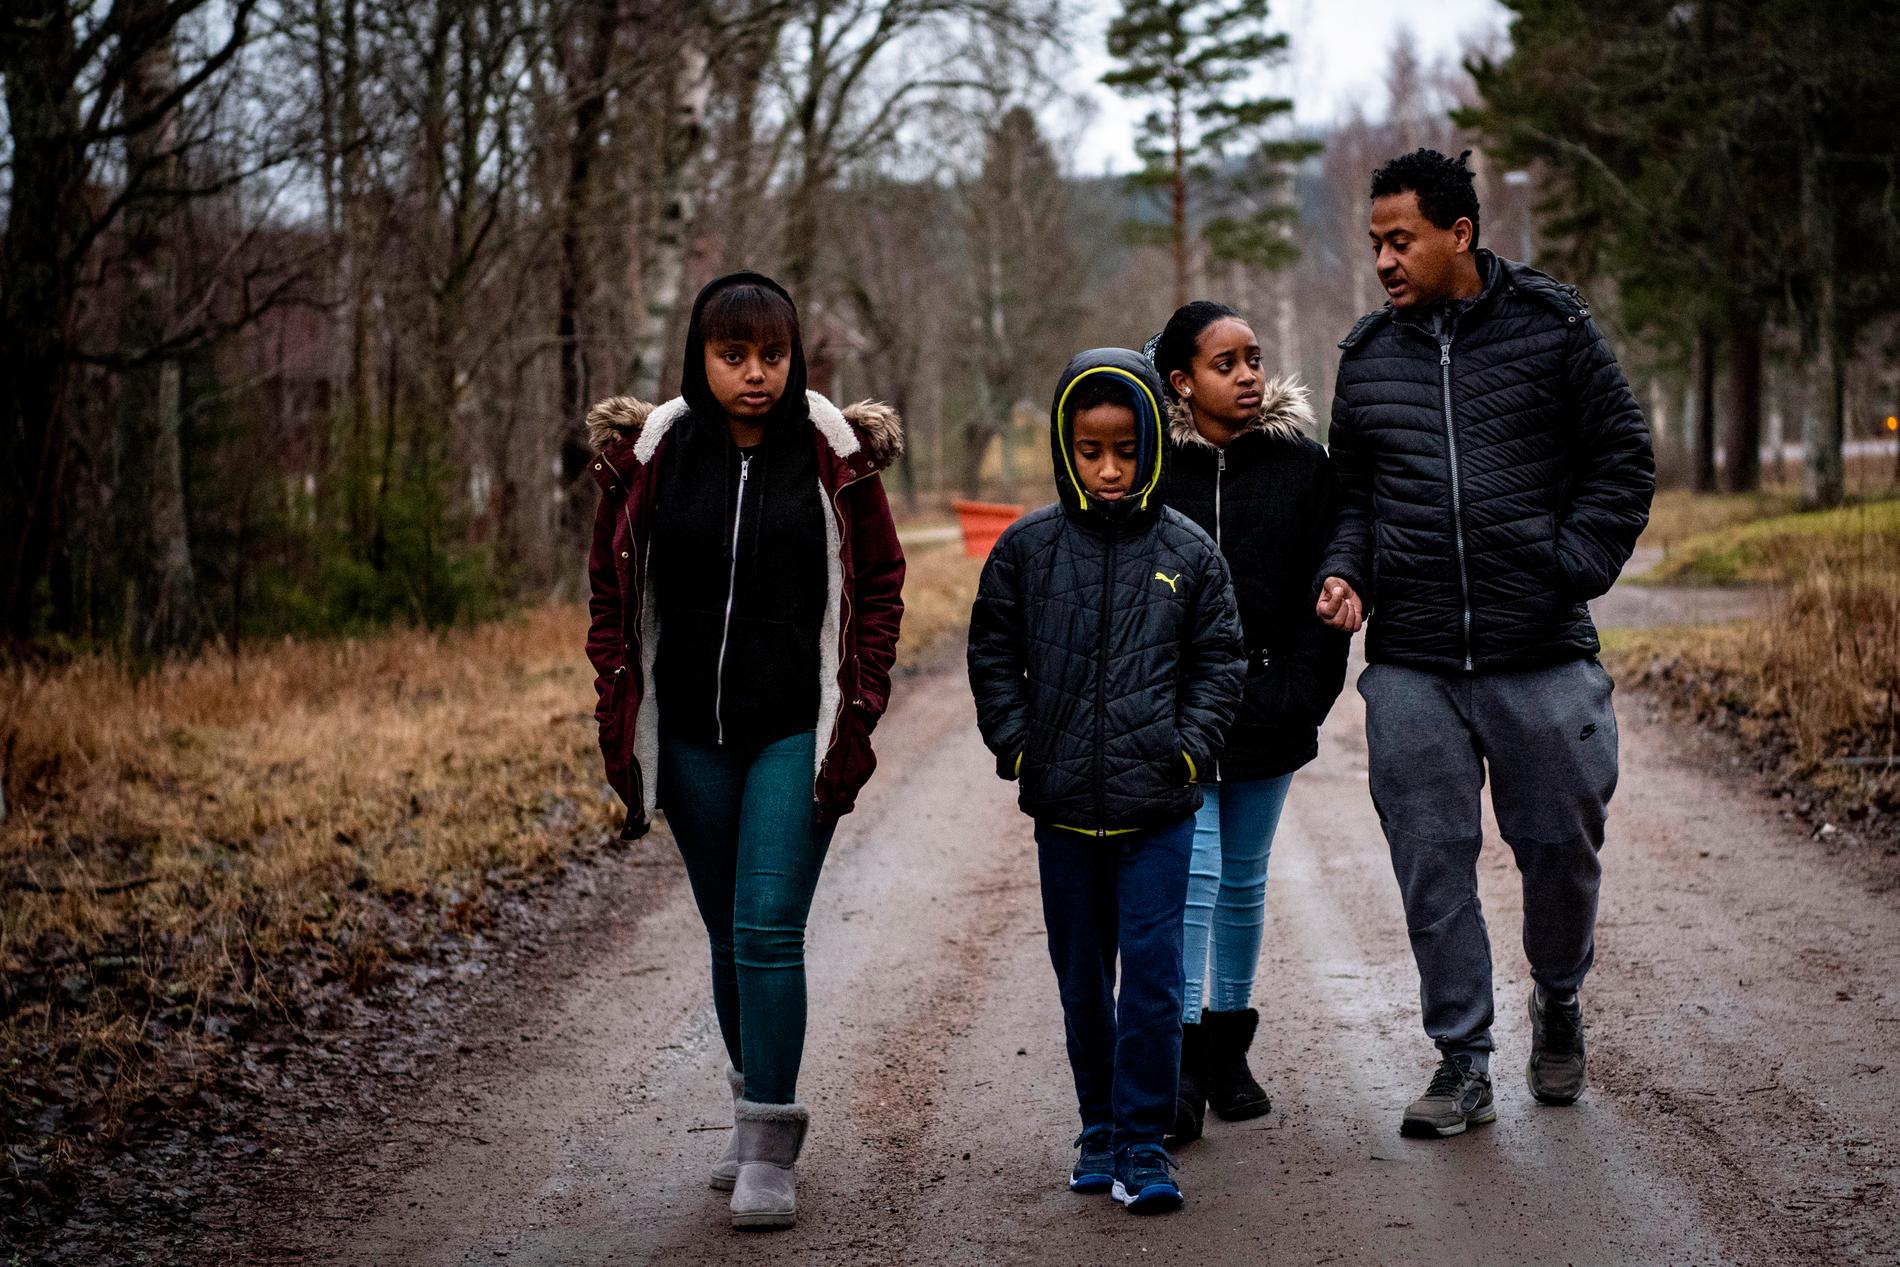 På nyårsafton flyttade familjen 30 mil hit – men nu är pappa Yonas arbetslös. 